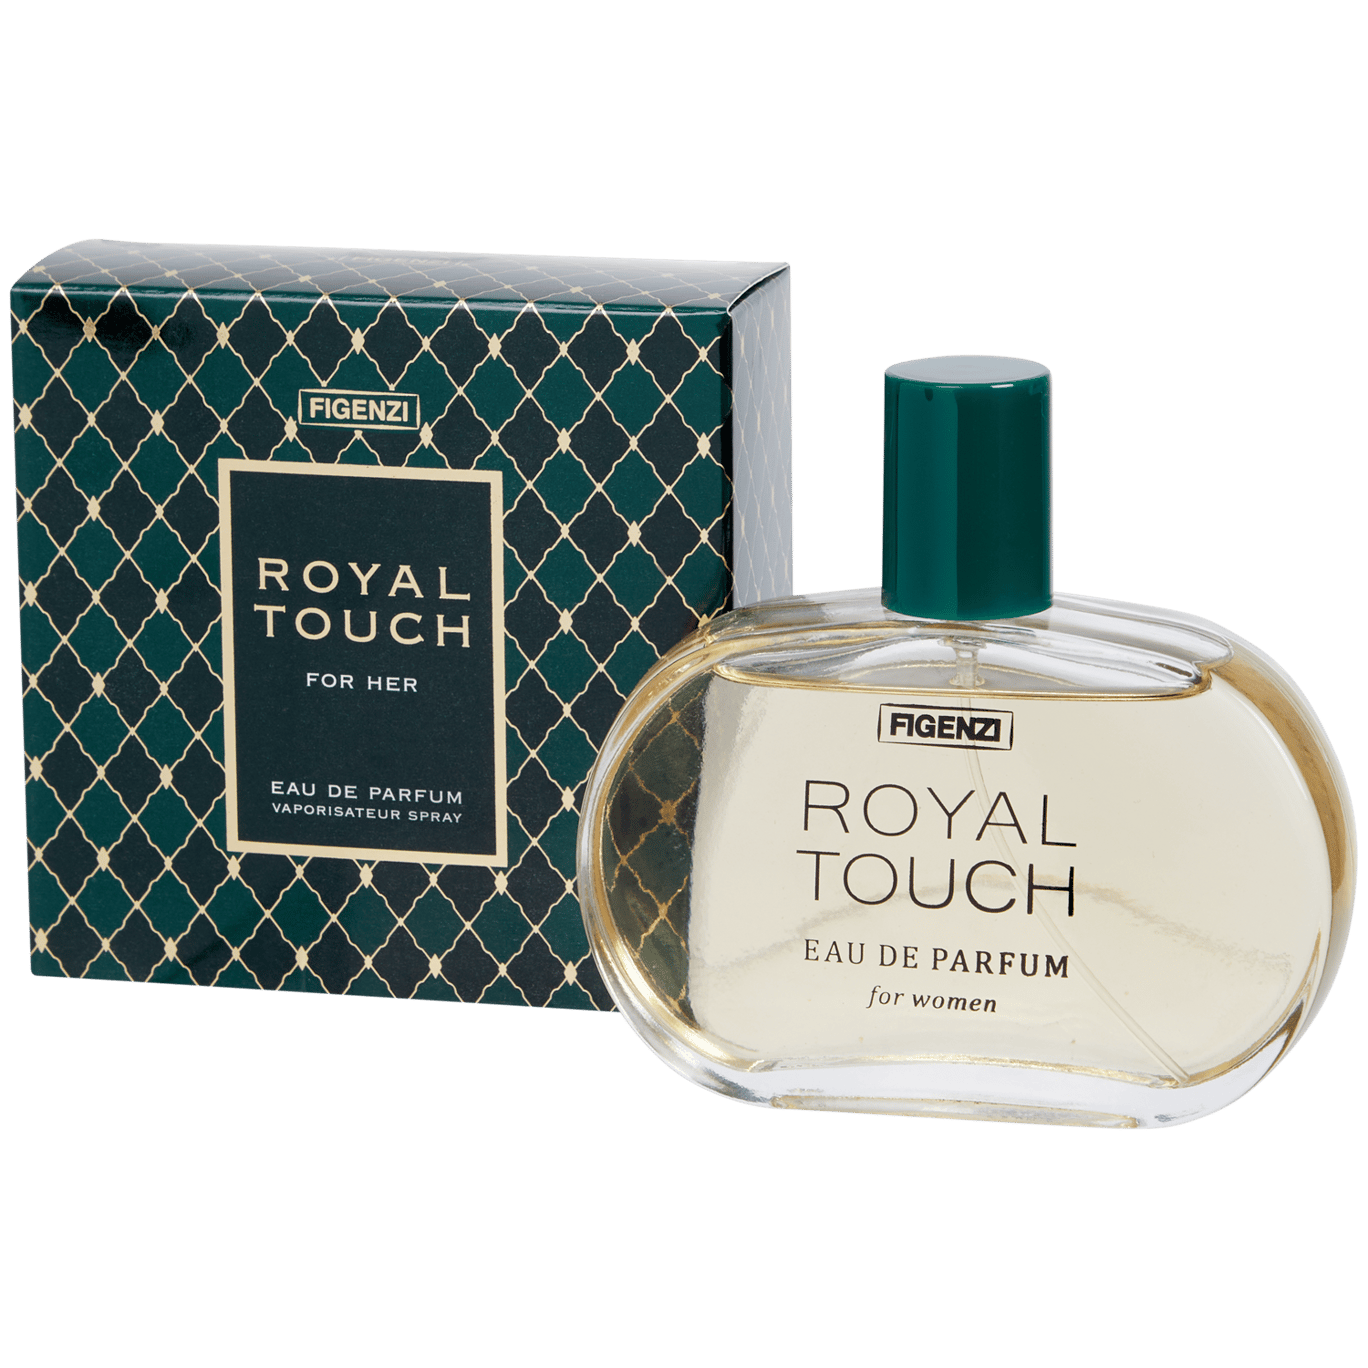 Eau de parfum Figenzi Royal Touch